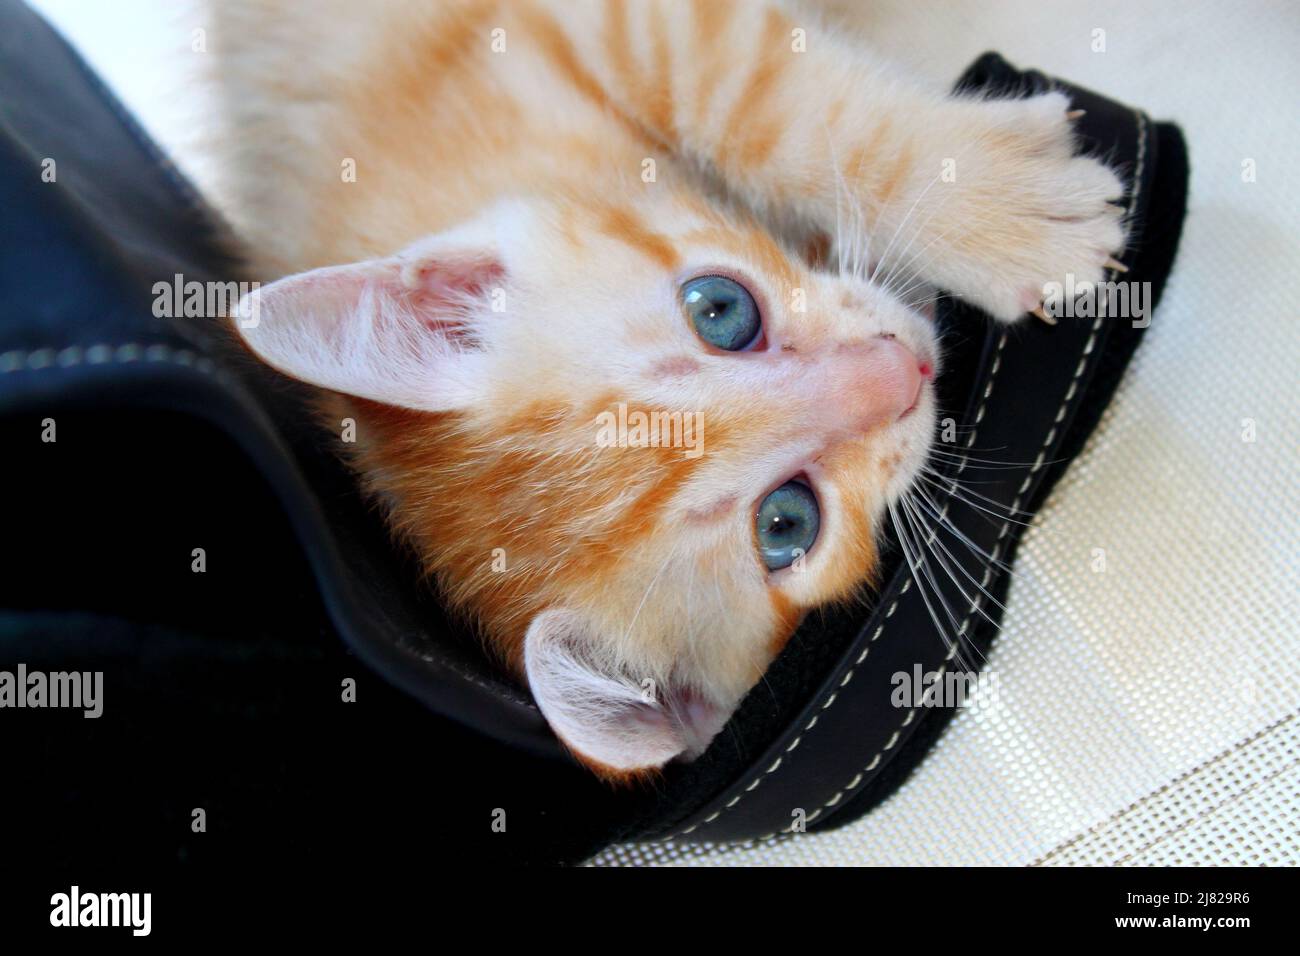 Chaton roux aux yeux bleus qui joue avec une anse de sac à main Stock Photo